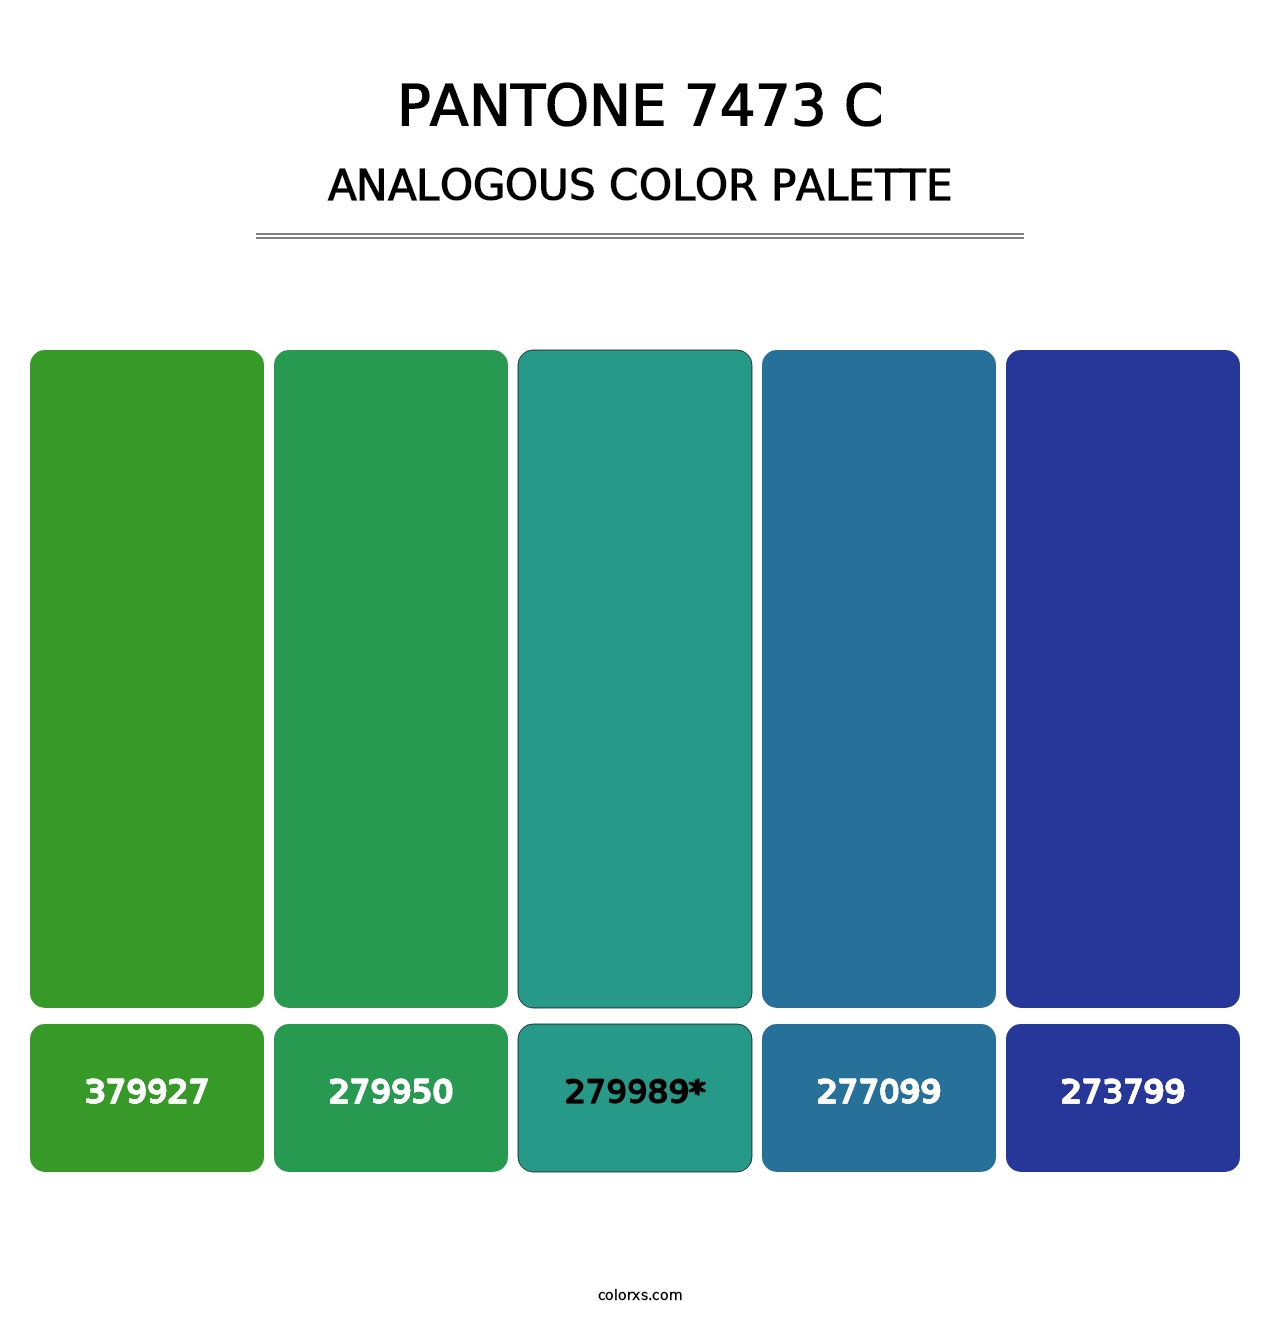 PANTONE 7473 C - Analogous Color Palette